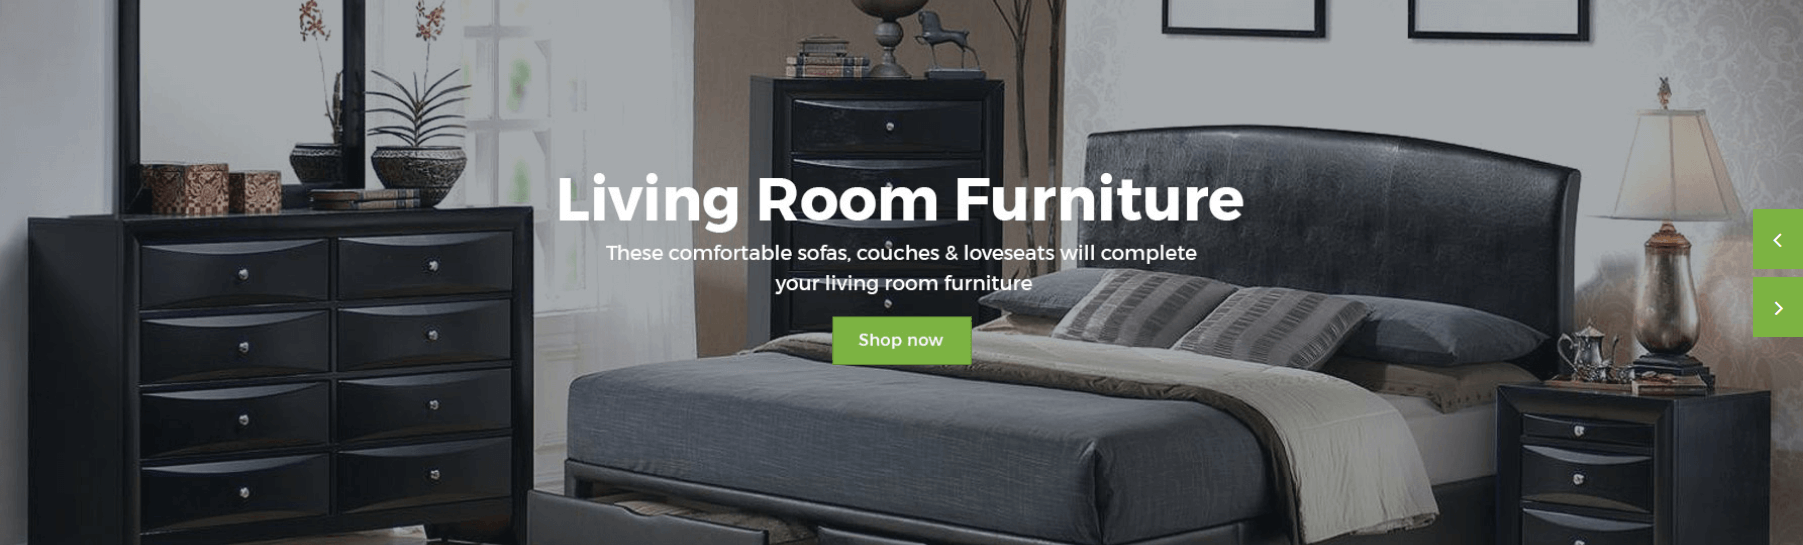 Comfort - Home Comfort Slider